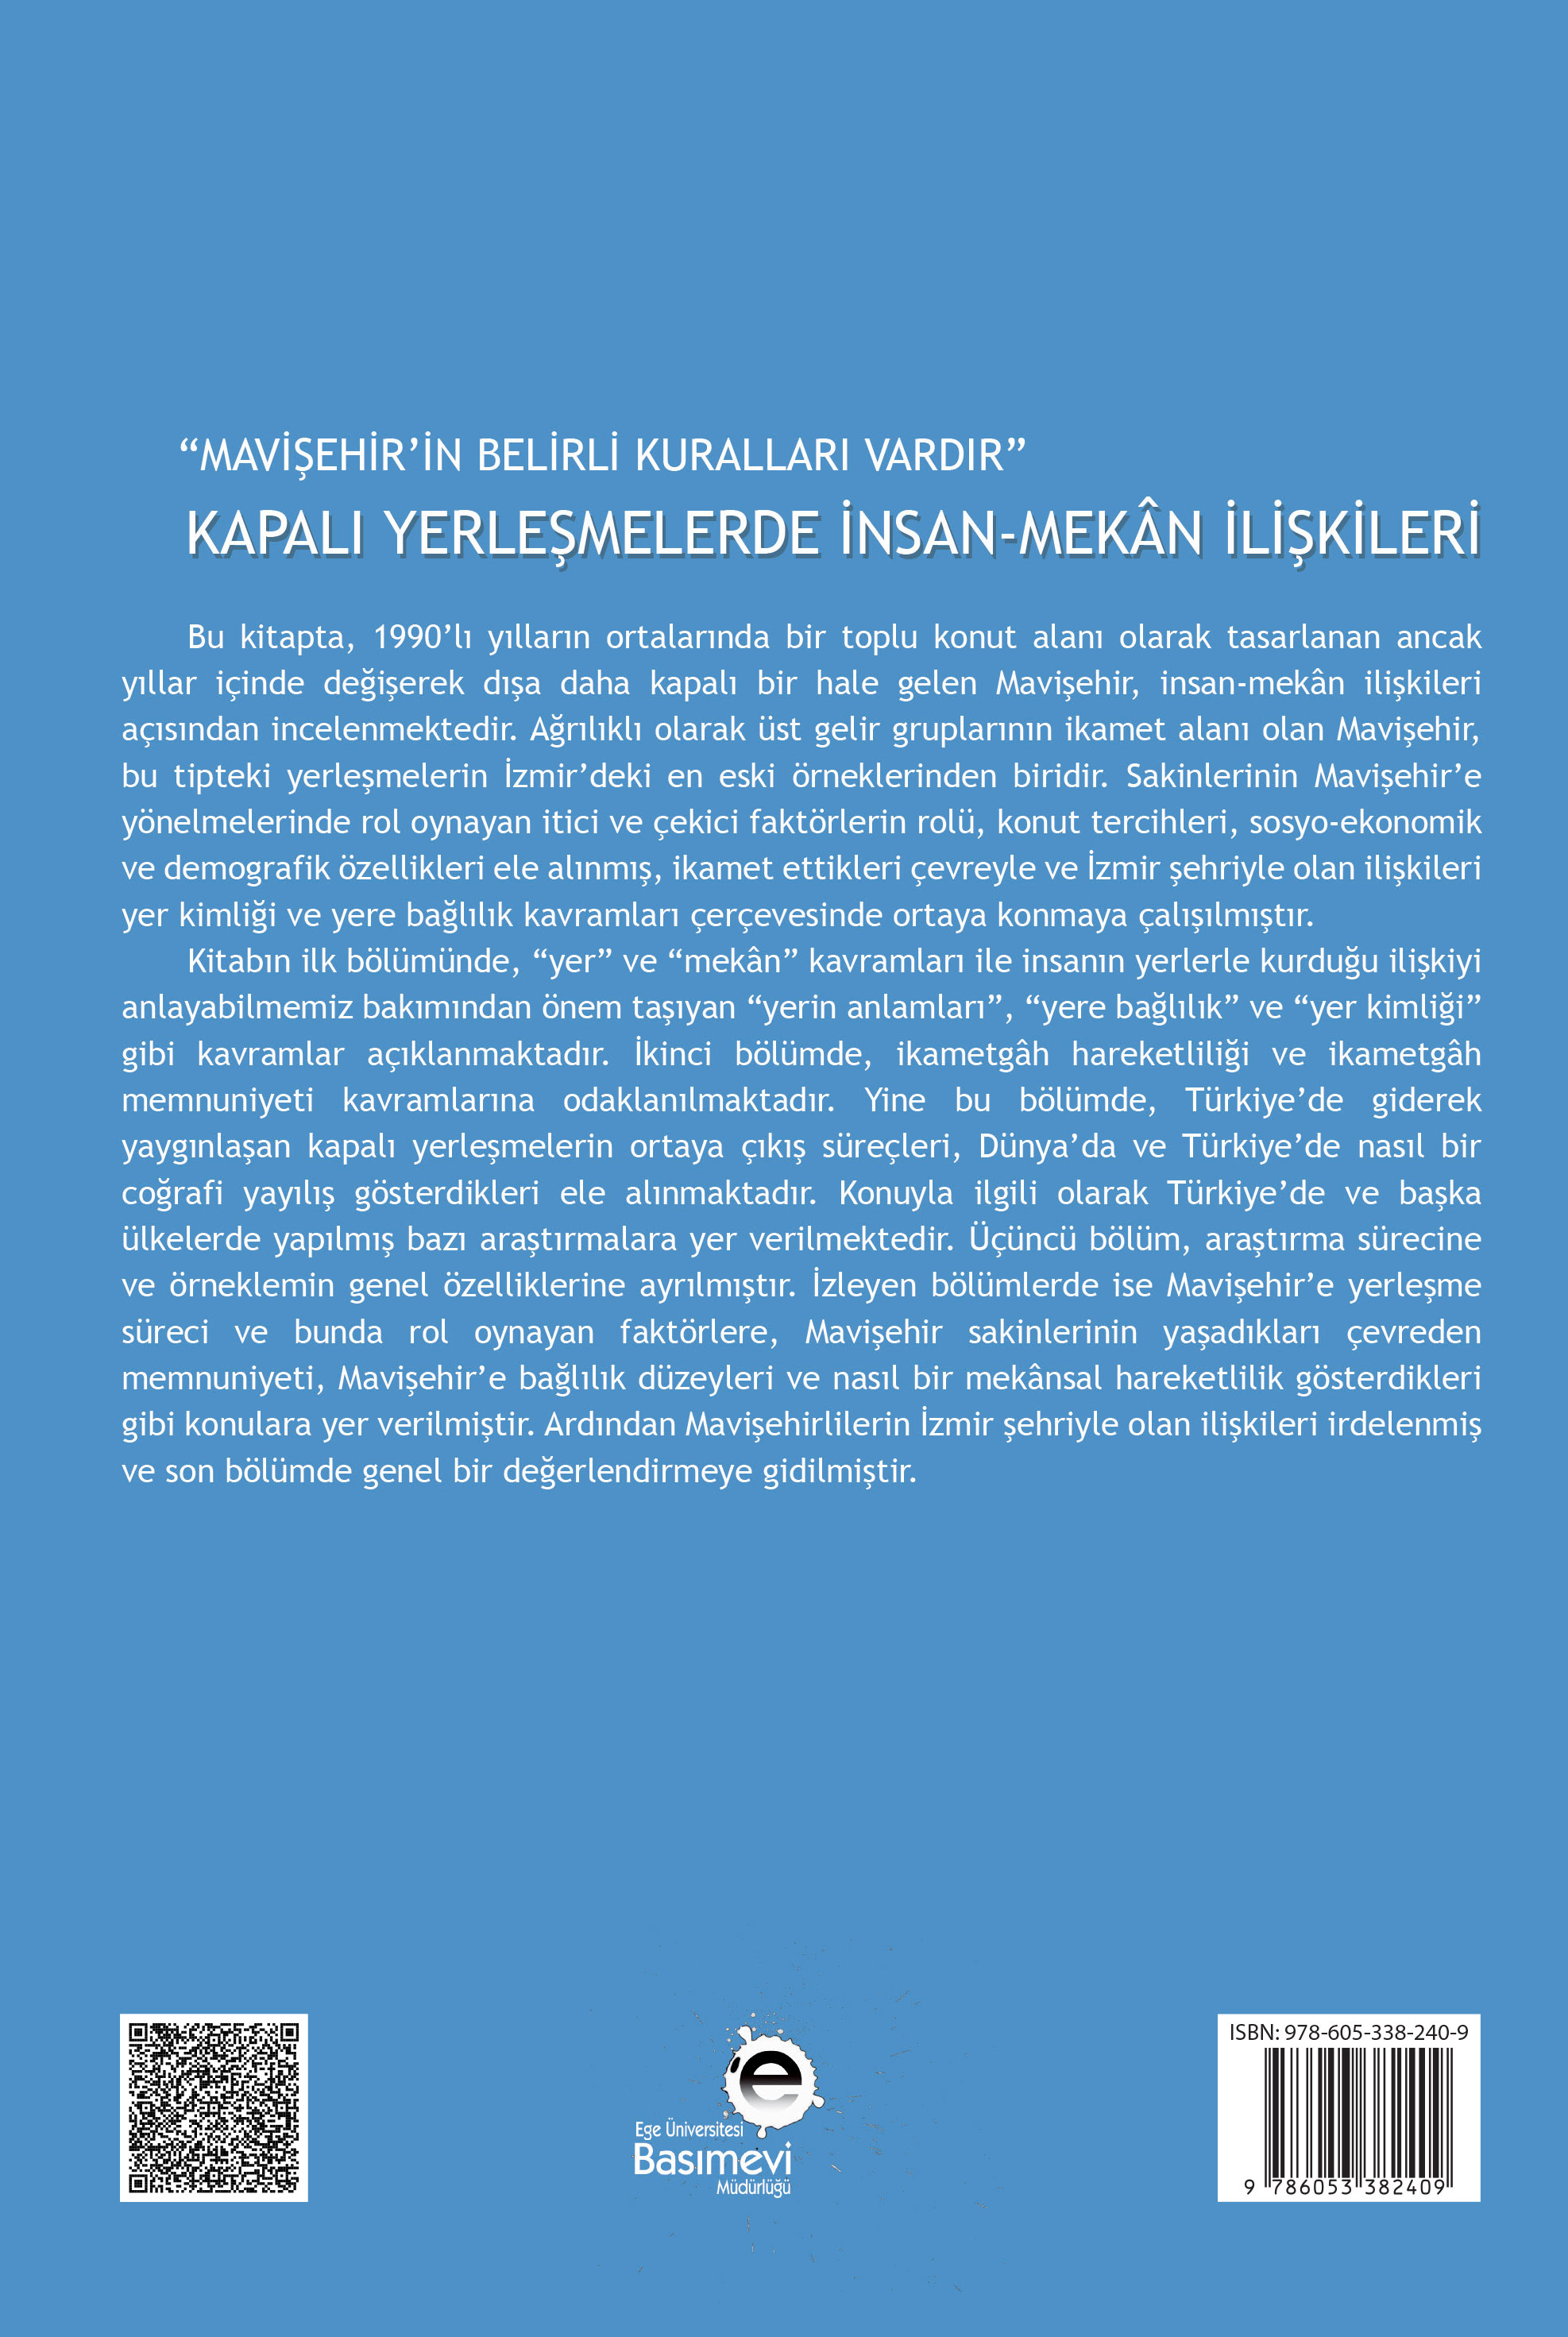 Mavişehir'in Belirli Kuralları Vardır: Kapalı yerleşmelerde İnsan-Mekan ilişkileri (Güncellenmiş) 